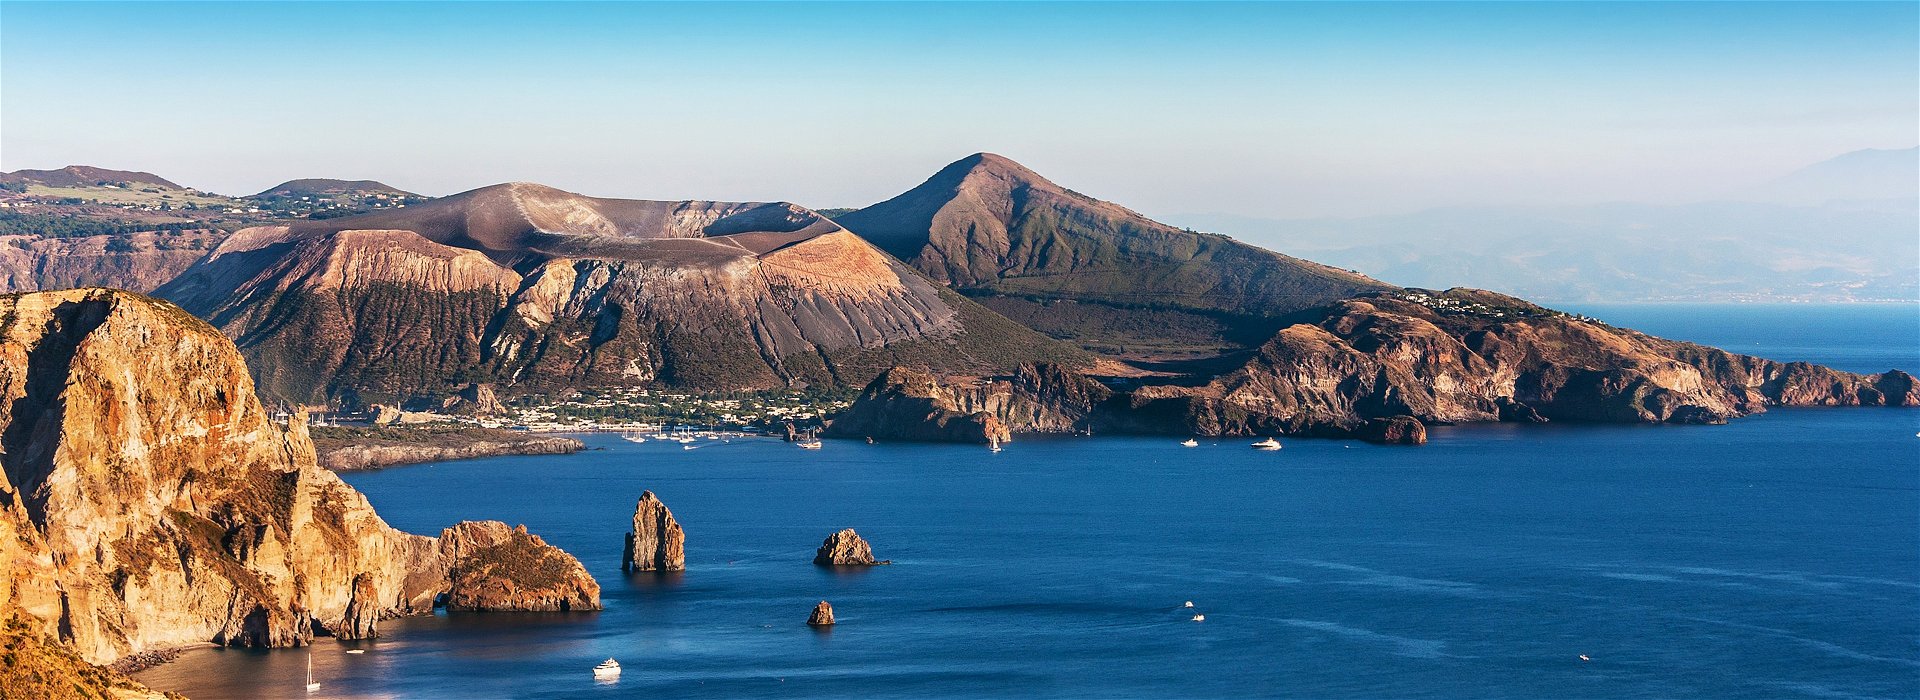  11 Best Mediterranean Adventures 